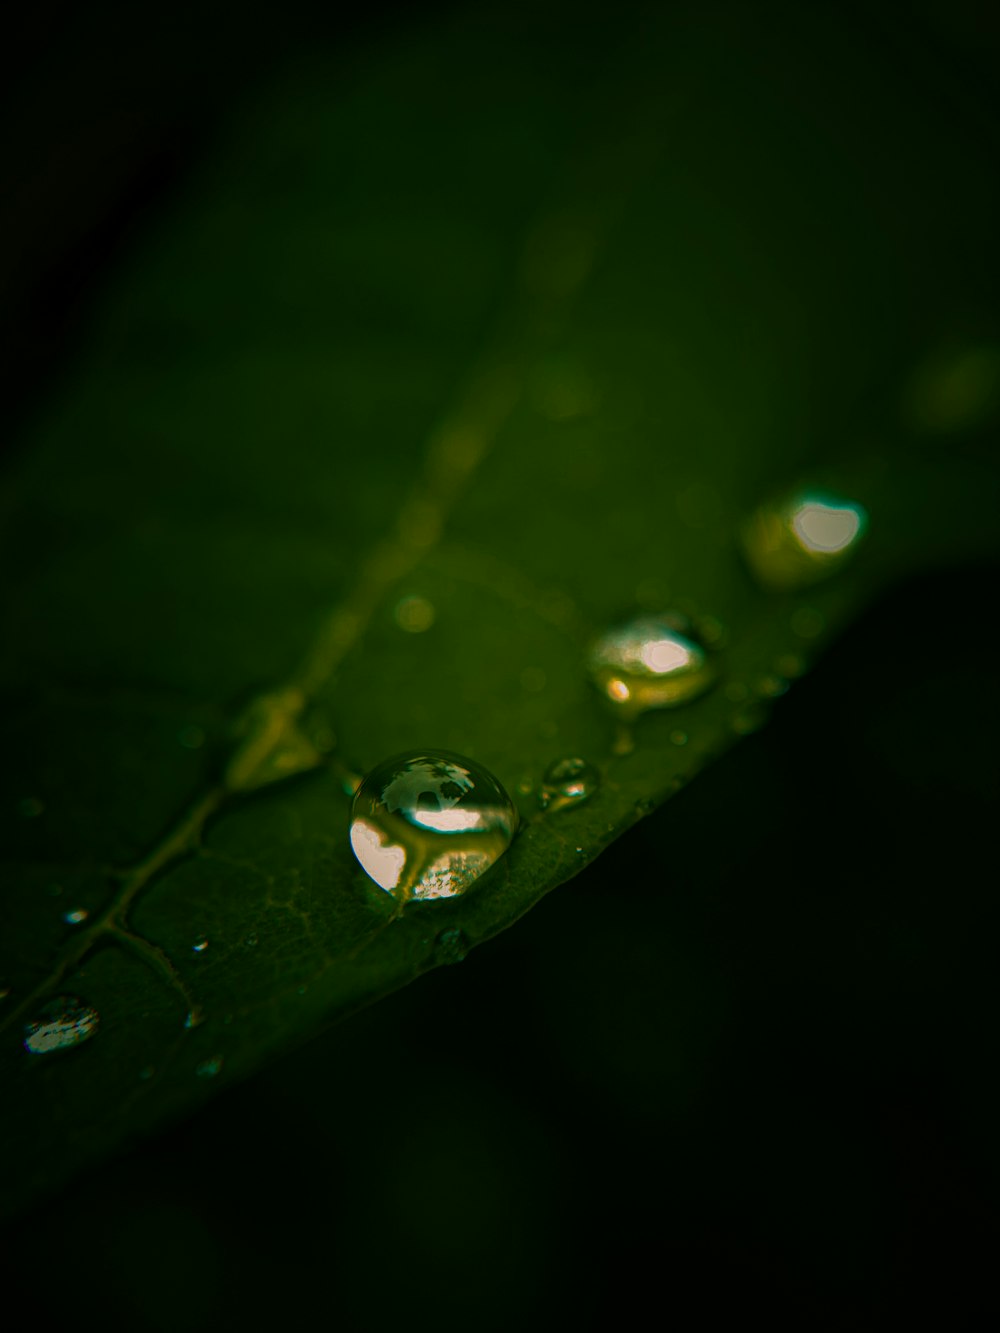 水滴がついた緑の葉